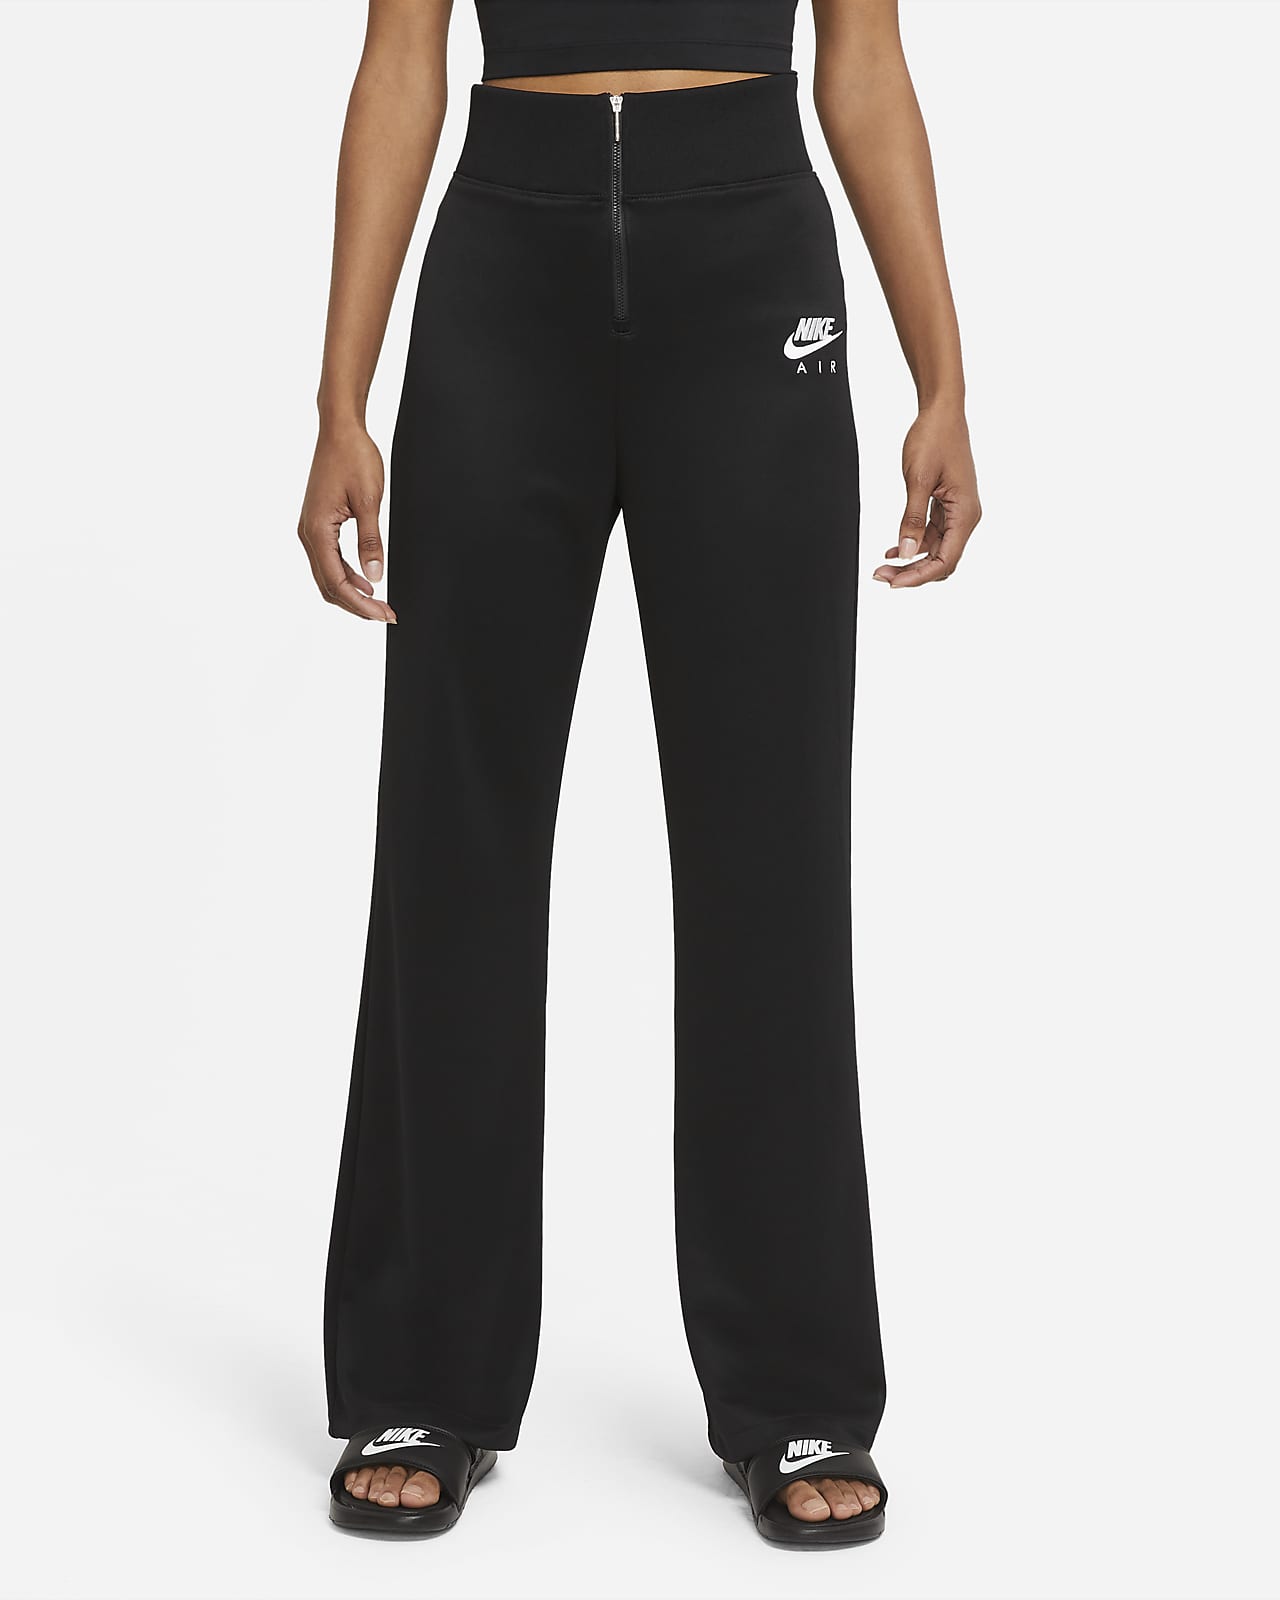 Nike Air Women's Trousers. Nike MA